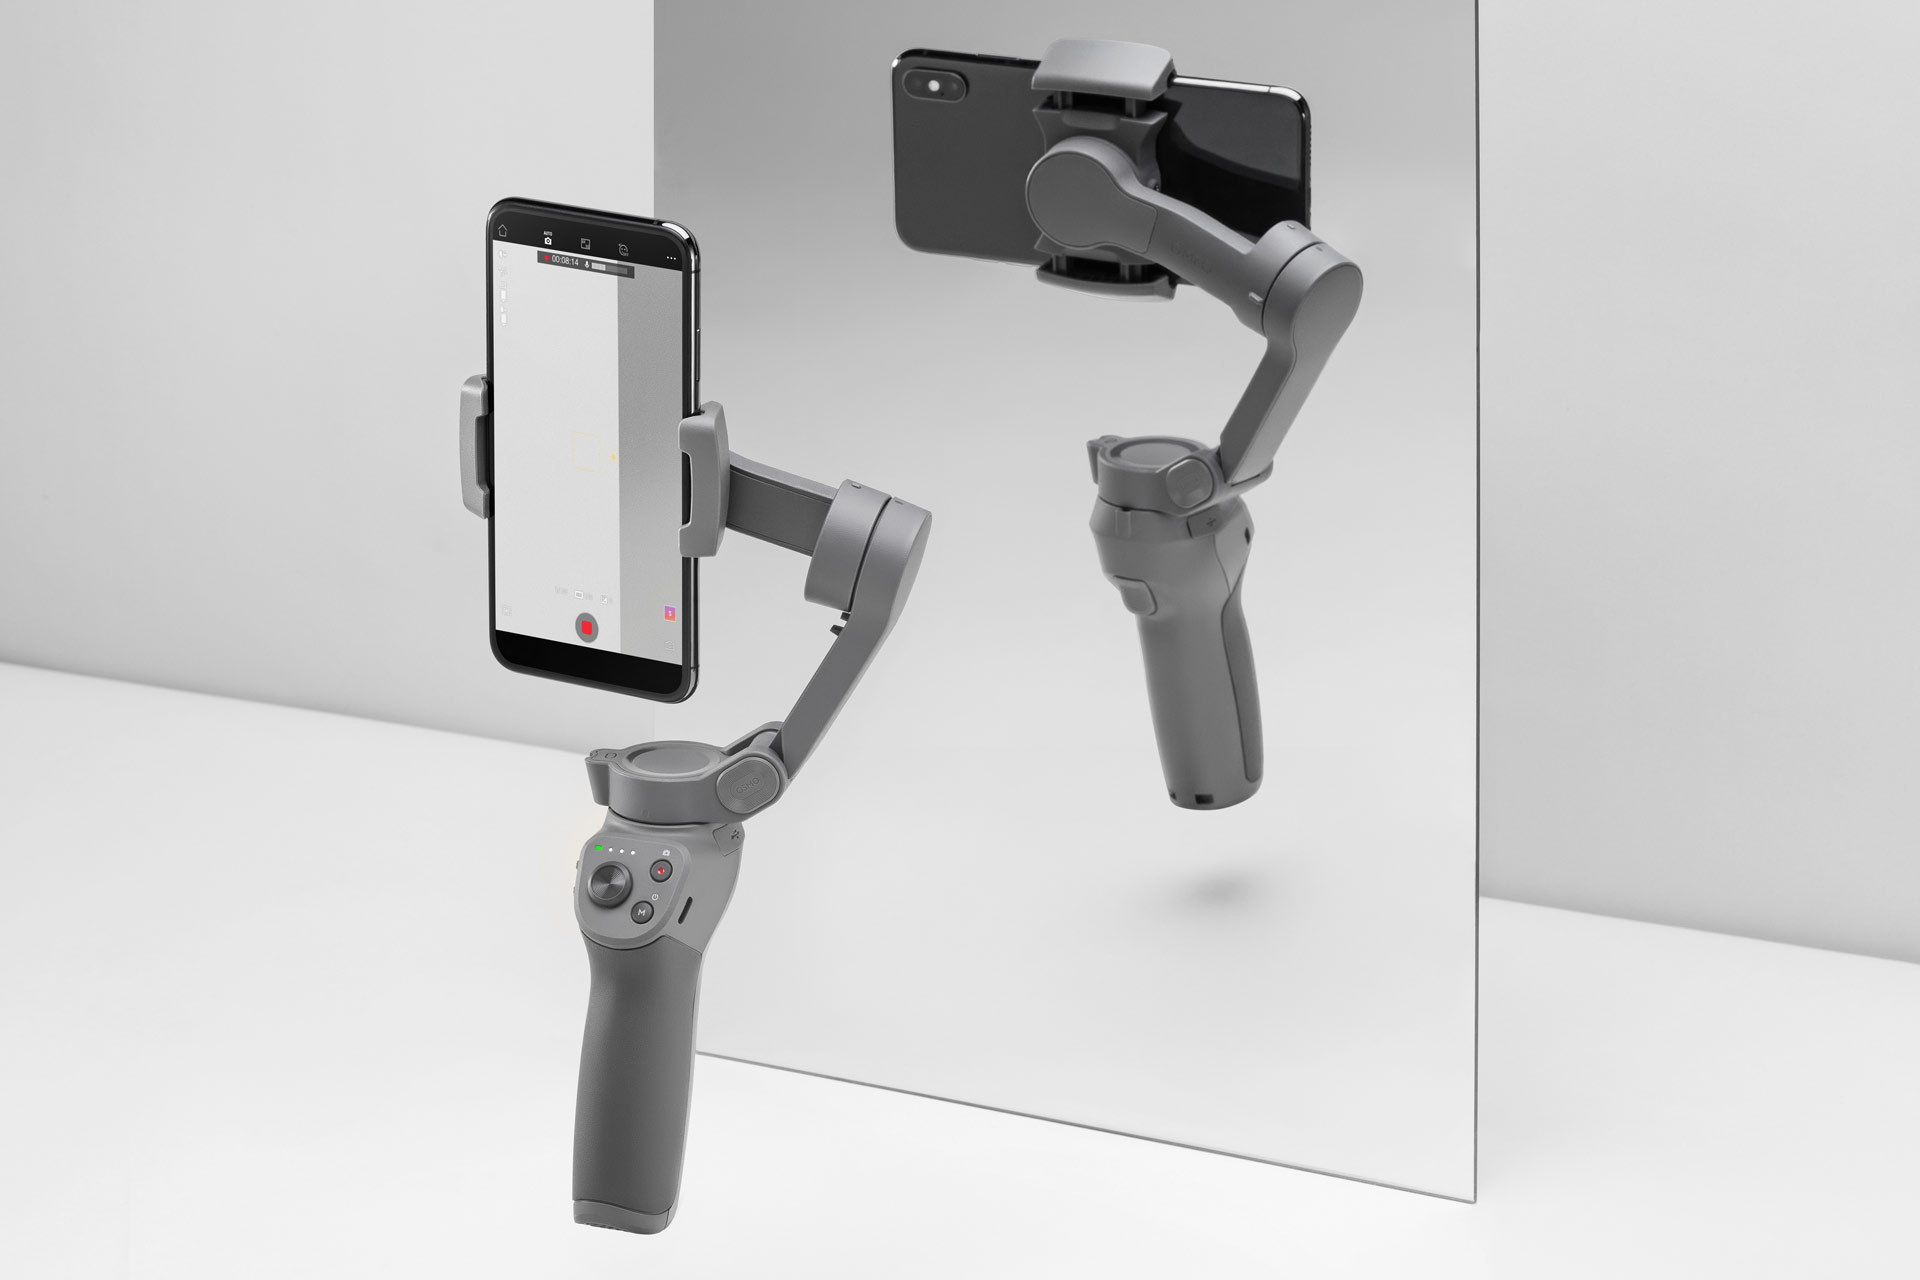 Presentan el DJI Osmo Mobile 6 - Una nueva generación de gimbal para  smartphones